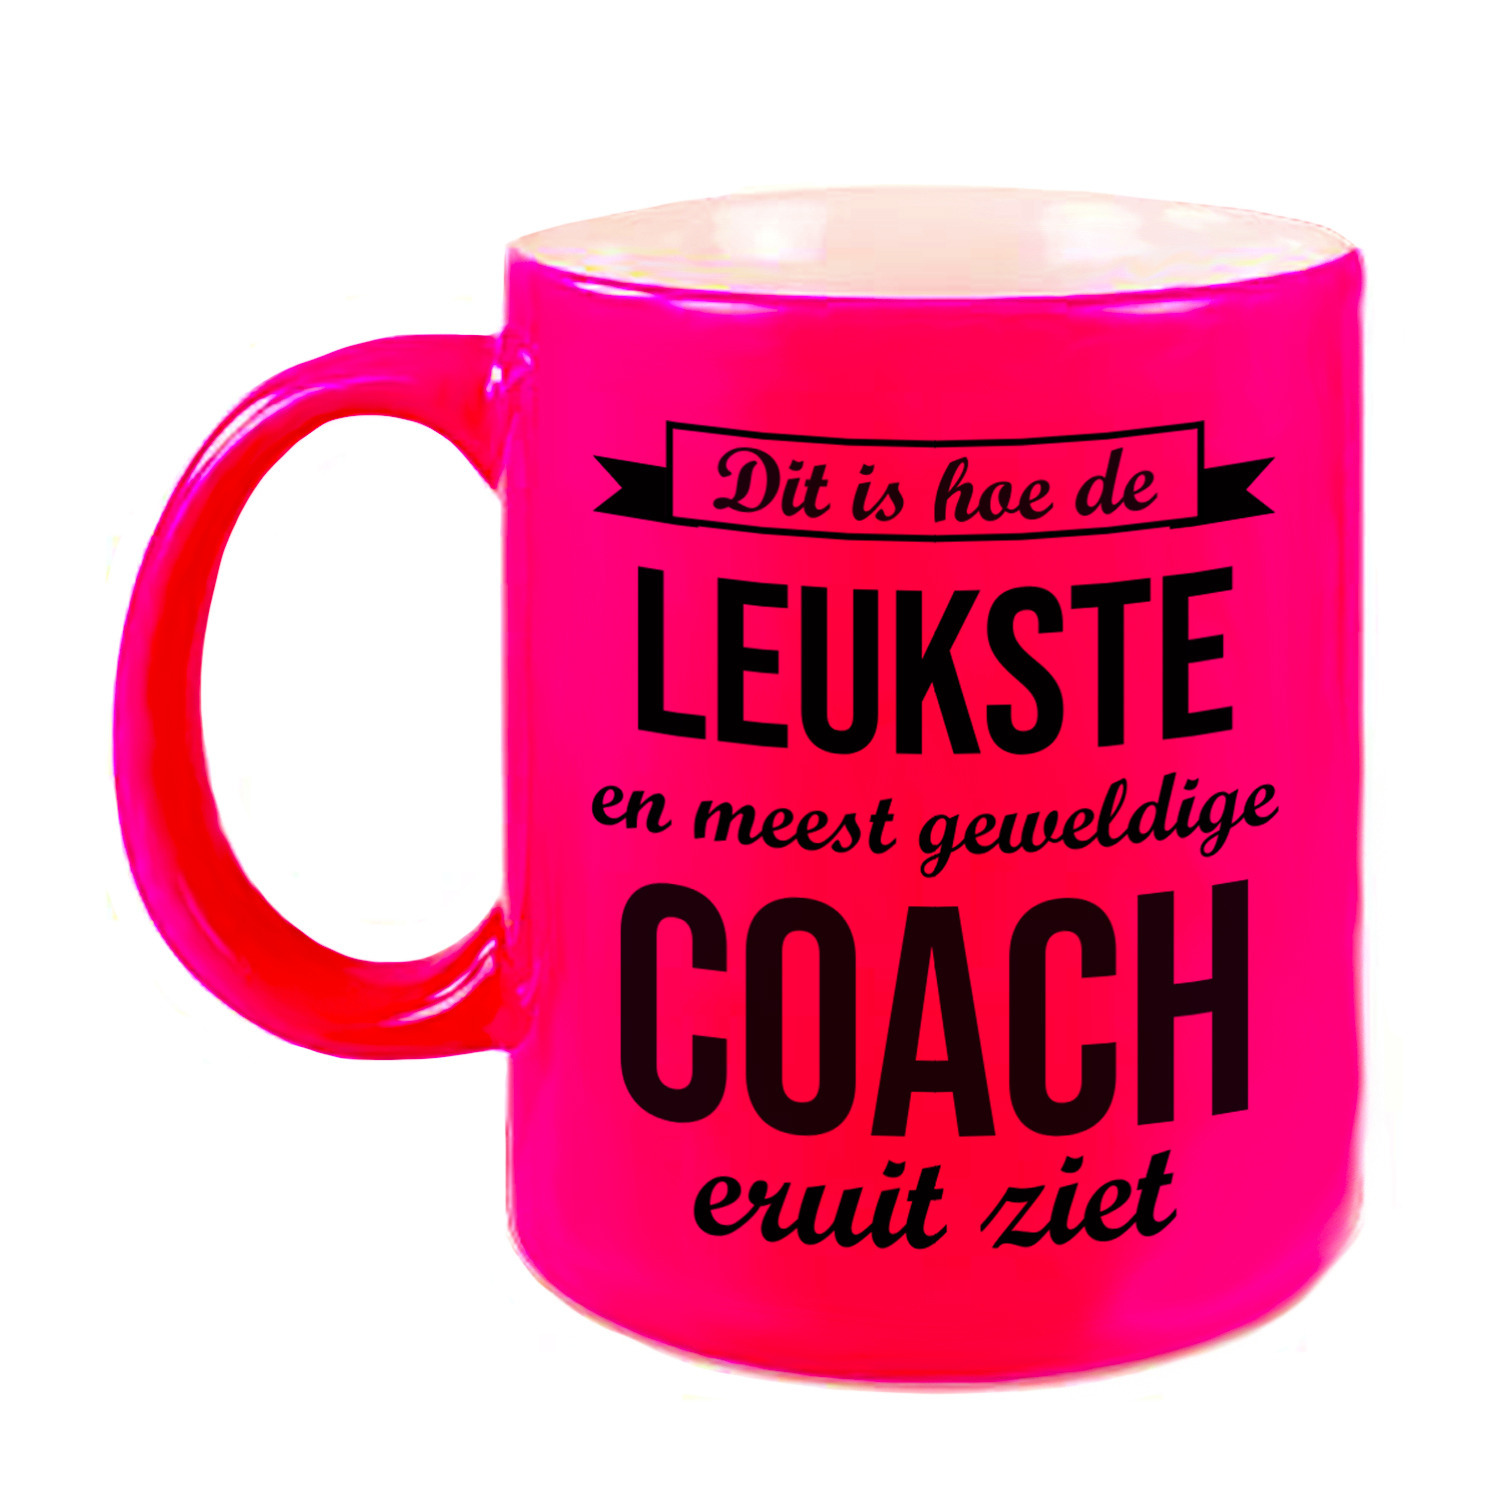 Leukste en meest geweldige coach cadeau koffiemok / theebeker neon roze 330 ml